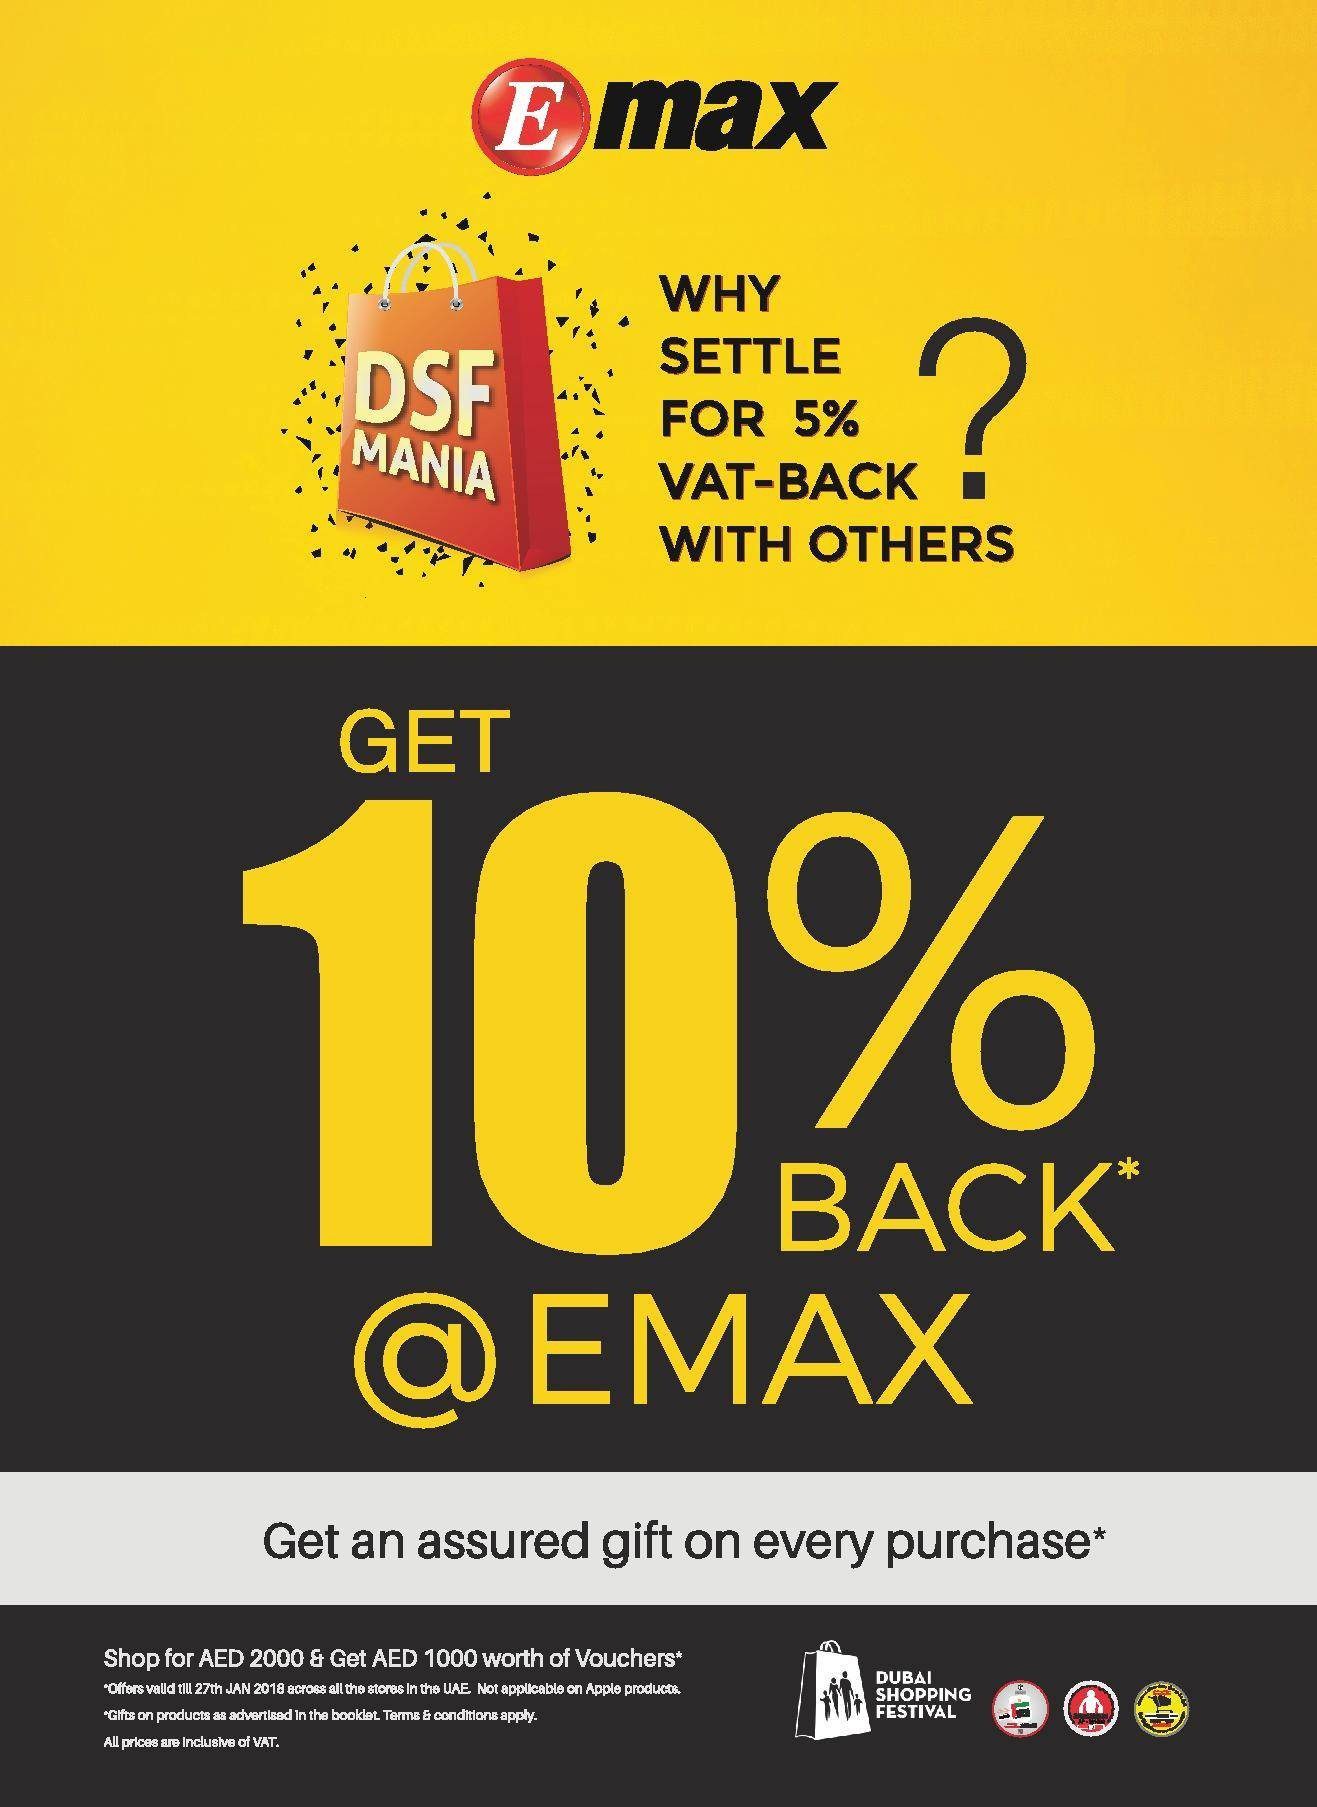 Emax Get 10% Back Offer